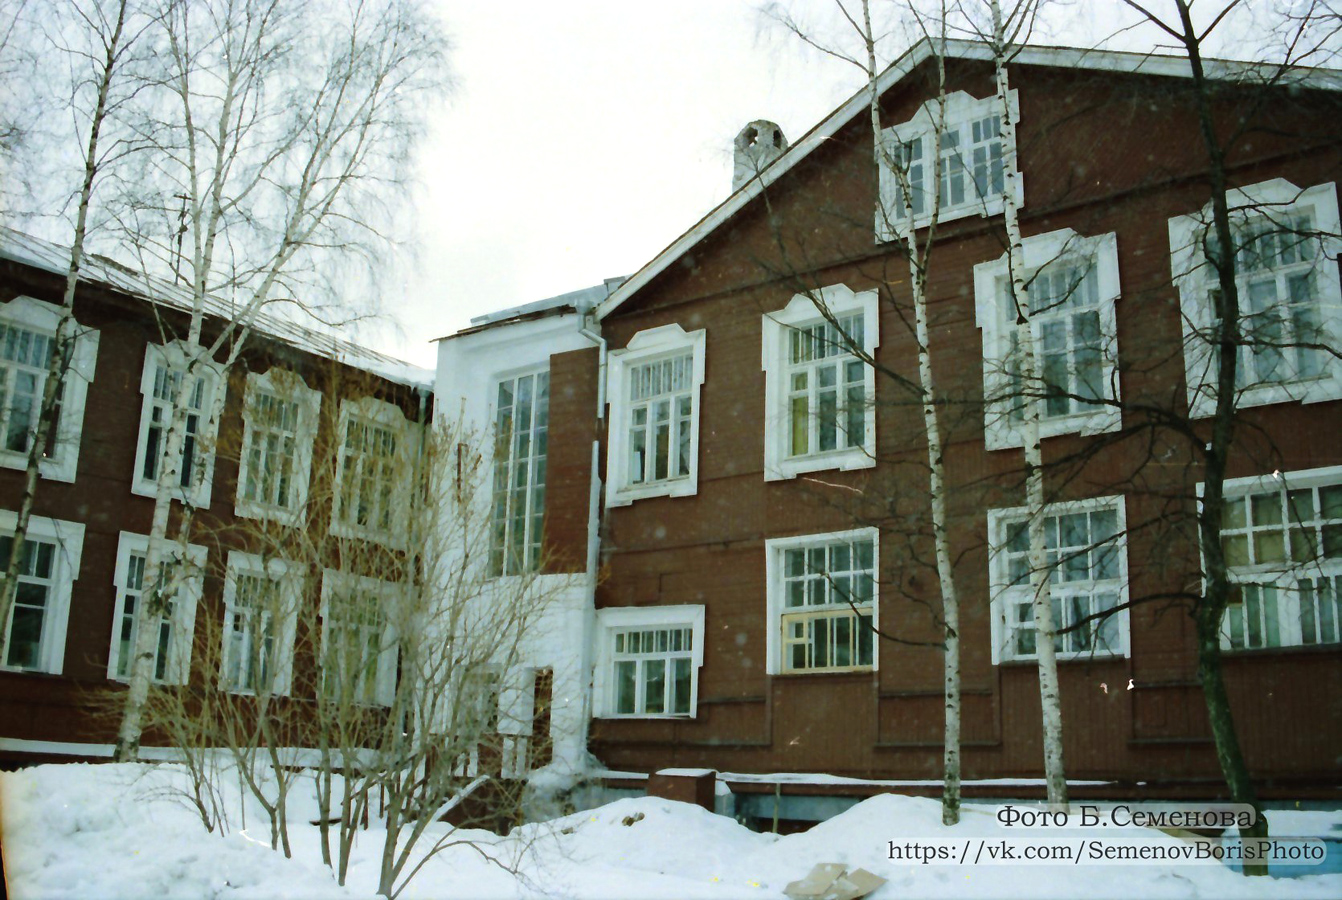 1997. Petrozavodsk. Building of Kareldrev Trust